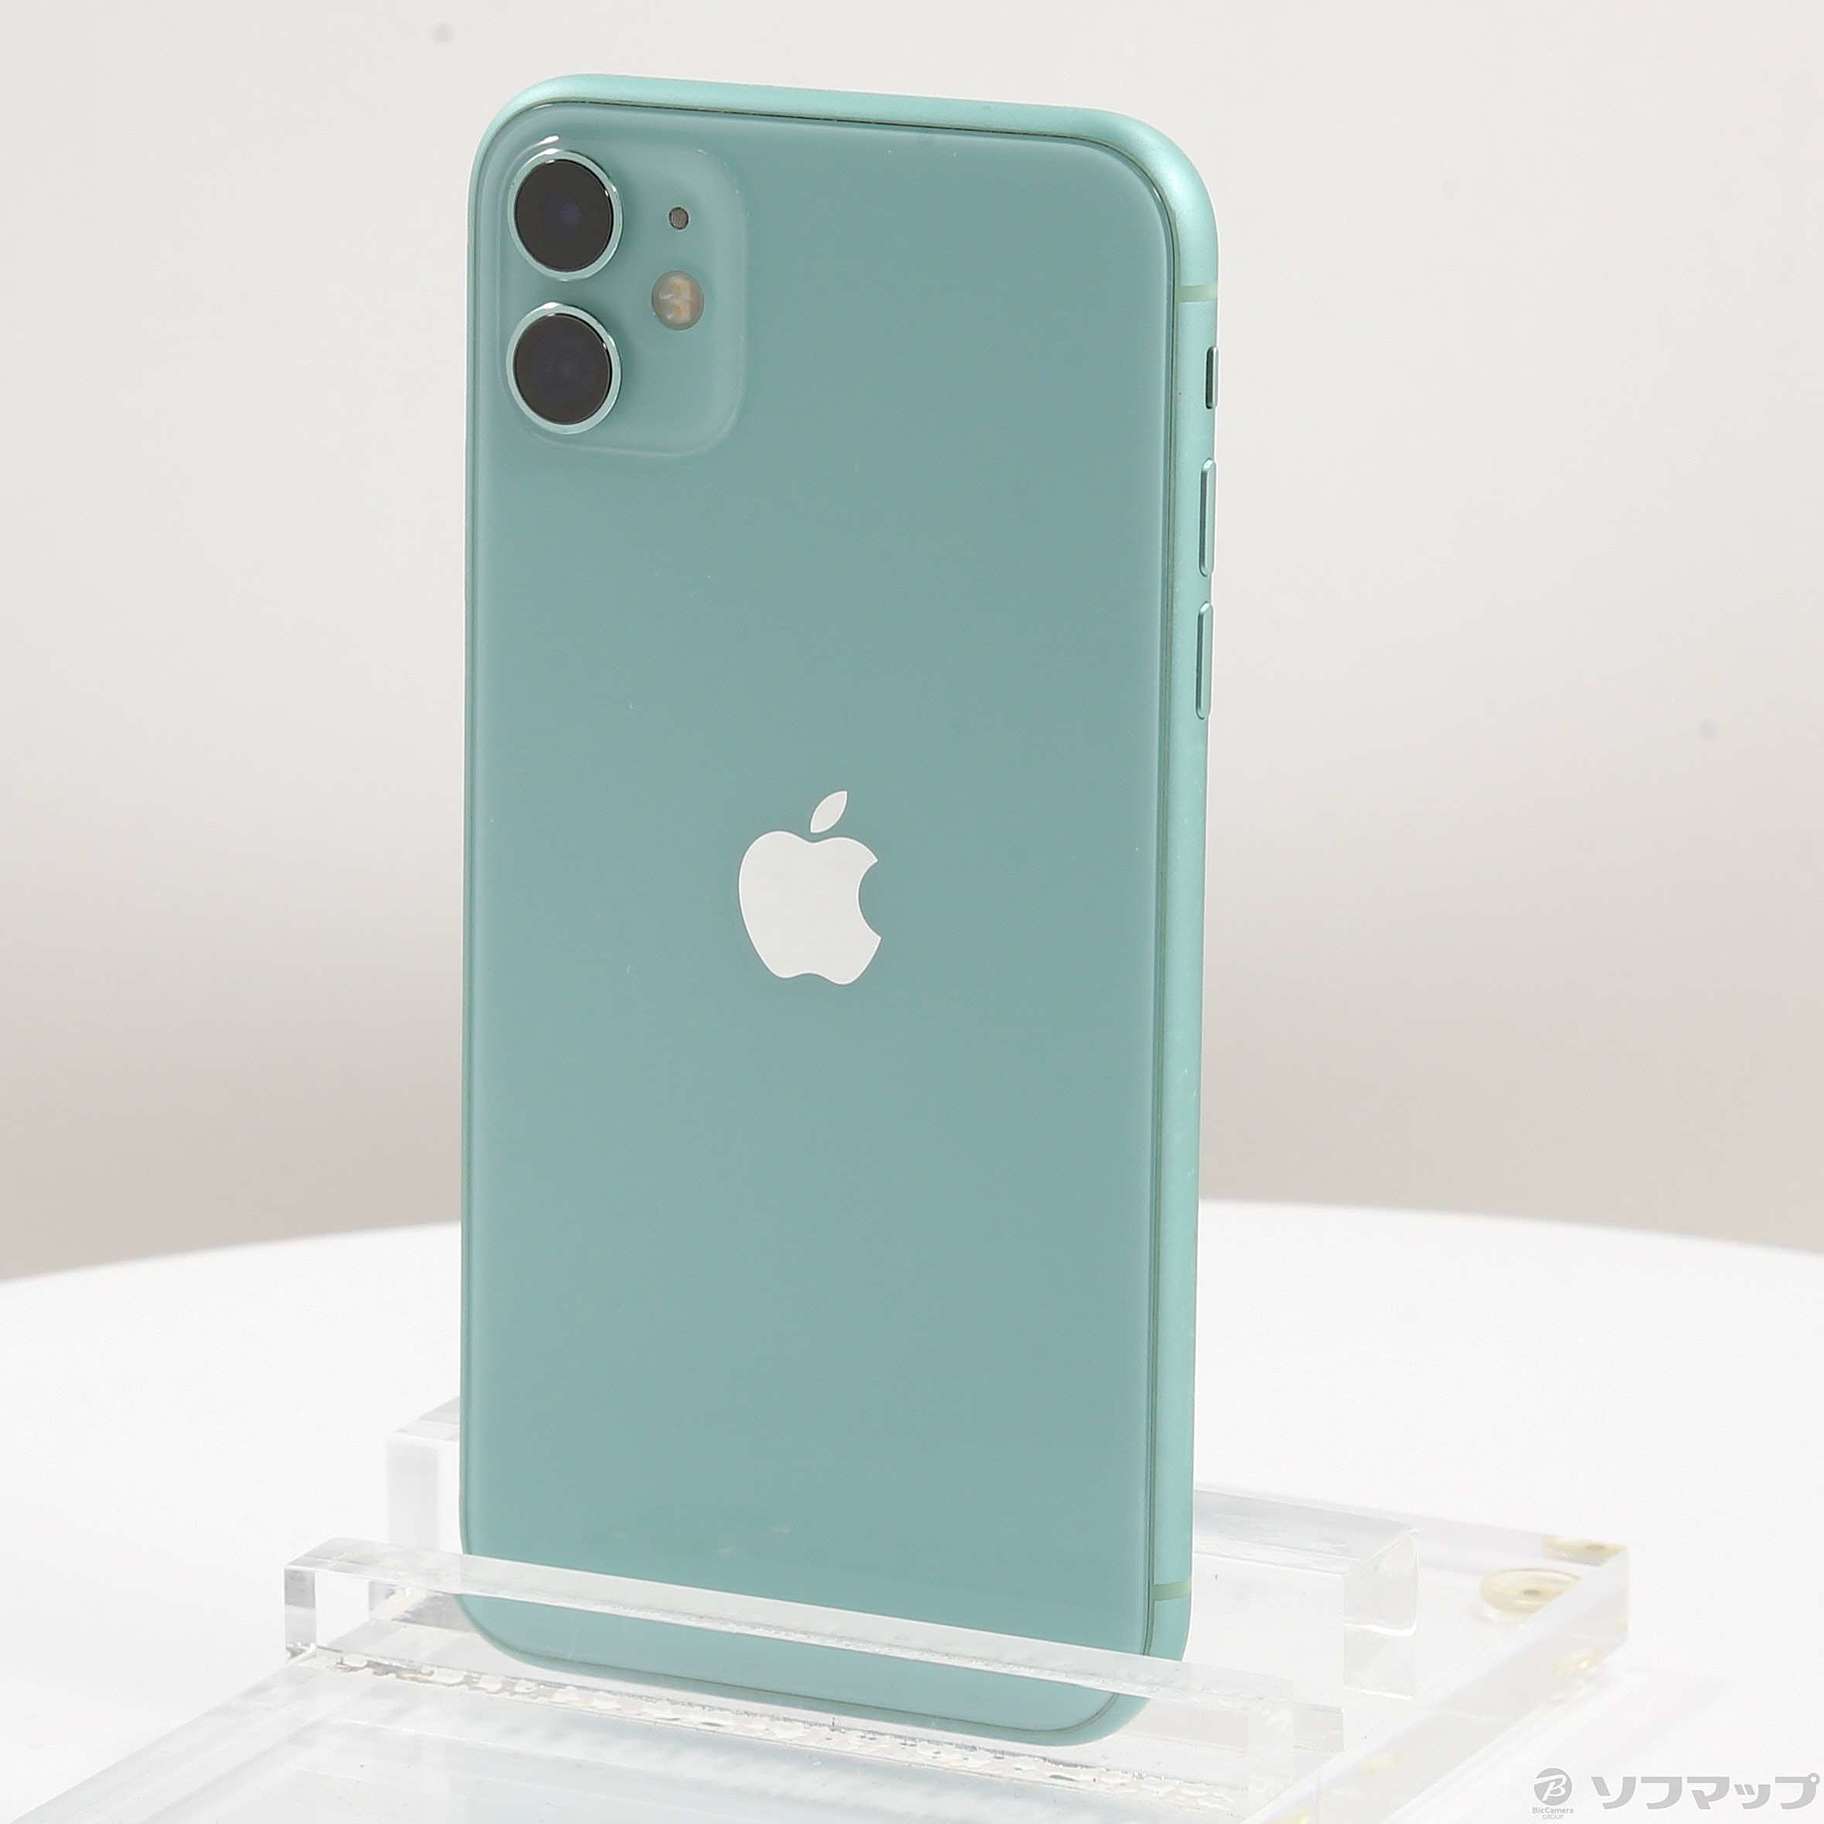 Apple iPhone11 128GB SIMフリー グリーン - スマートフォン本体